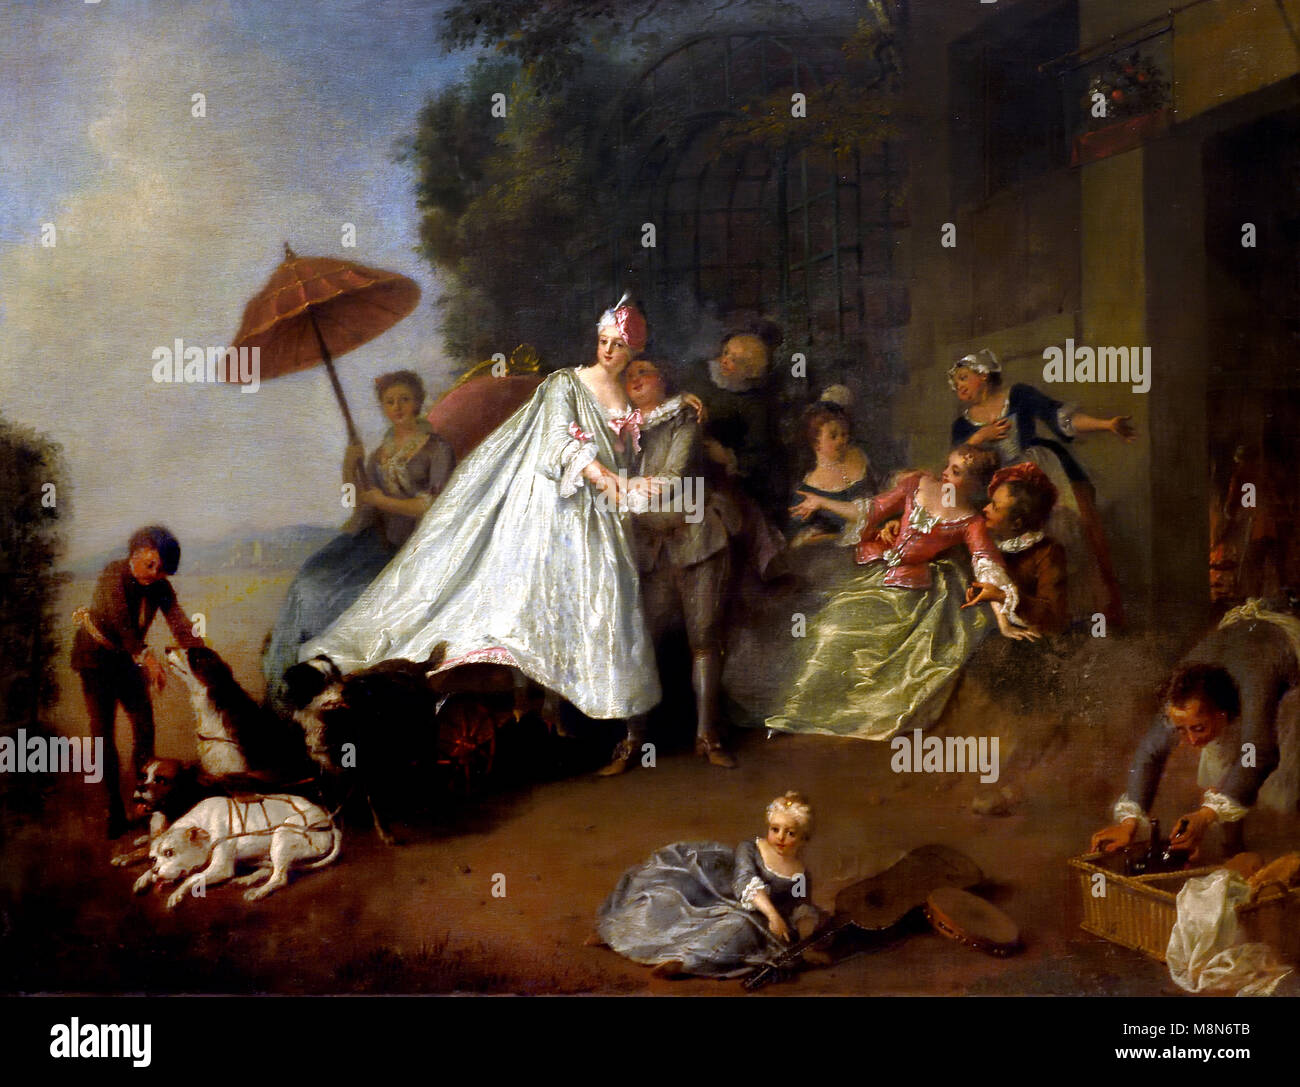 L'arrivée d'une dame dans une voiture tirée par des chiens 18e siècle Nicolas LANCRET 1690 - 1743, France, Français Banque D'Images